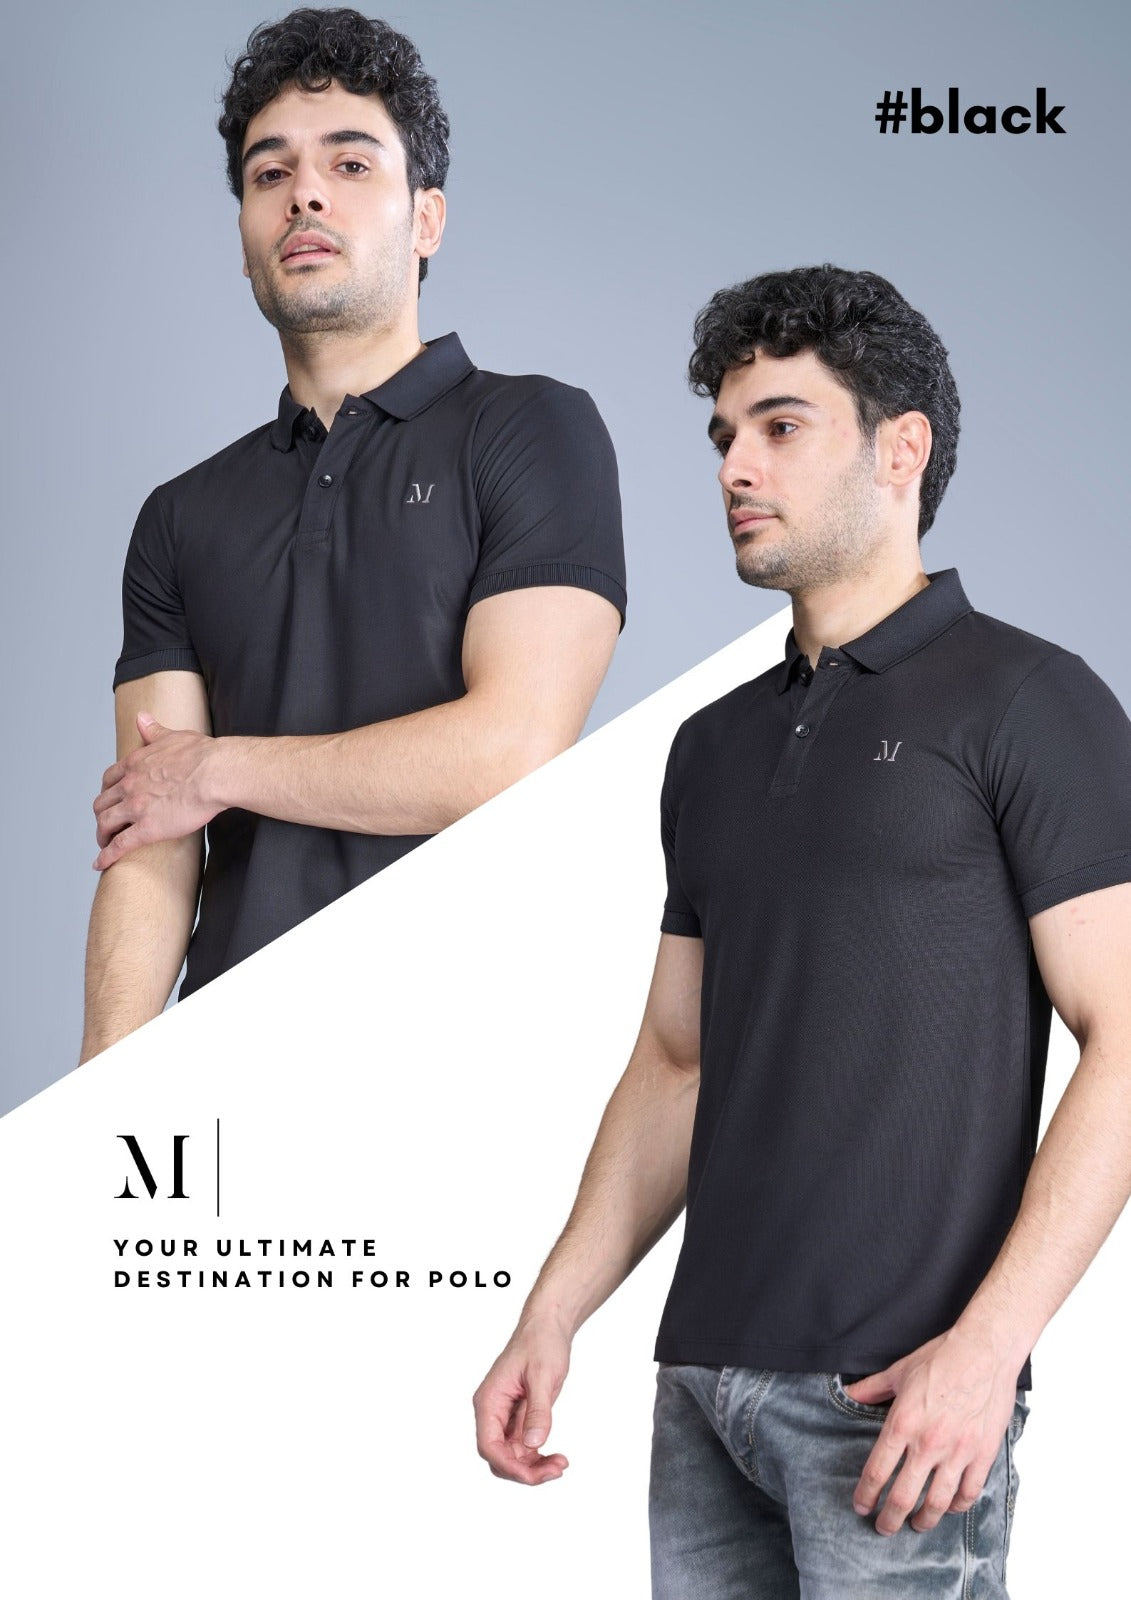 Imp J E 8 Maxzone Clothing Micro Mens Tshirts